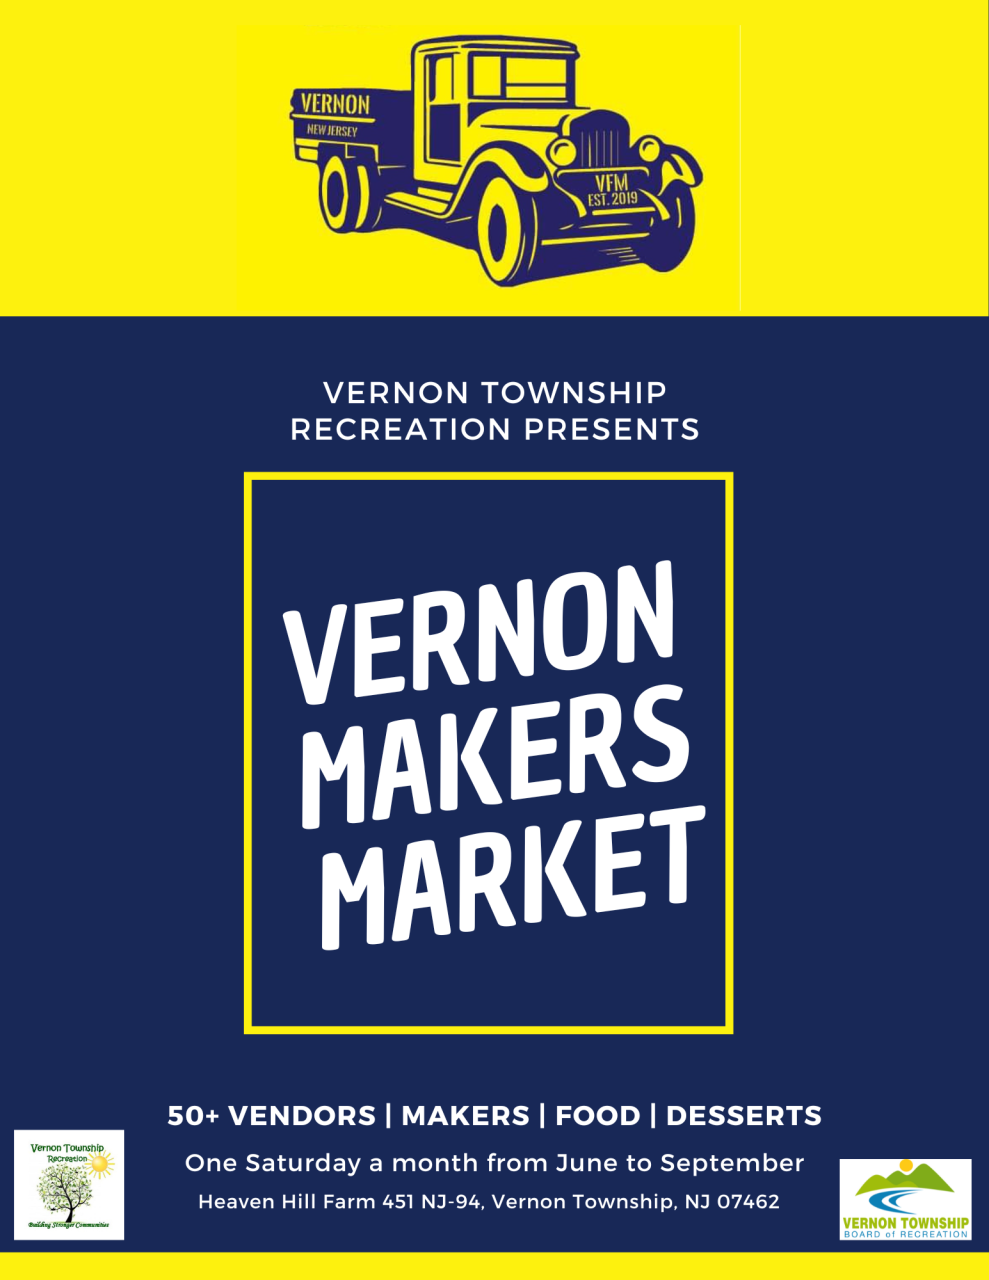 VernonMakersMarket-1